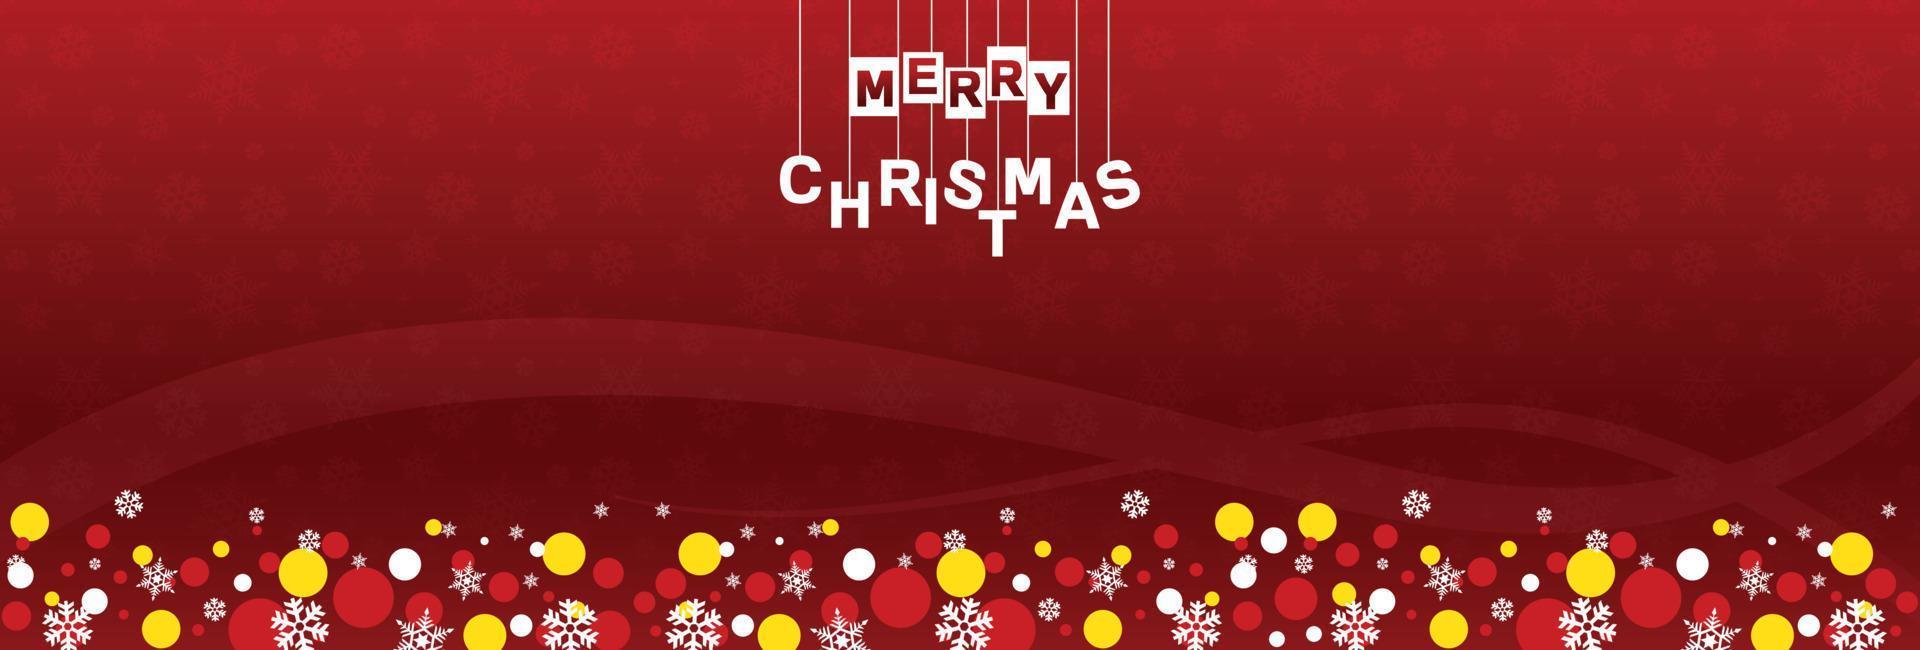 glad jul webb baner mall med gnistrande lampor på röd bakgrund, försäljning och erbjudanden vektor